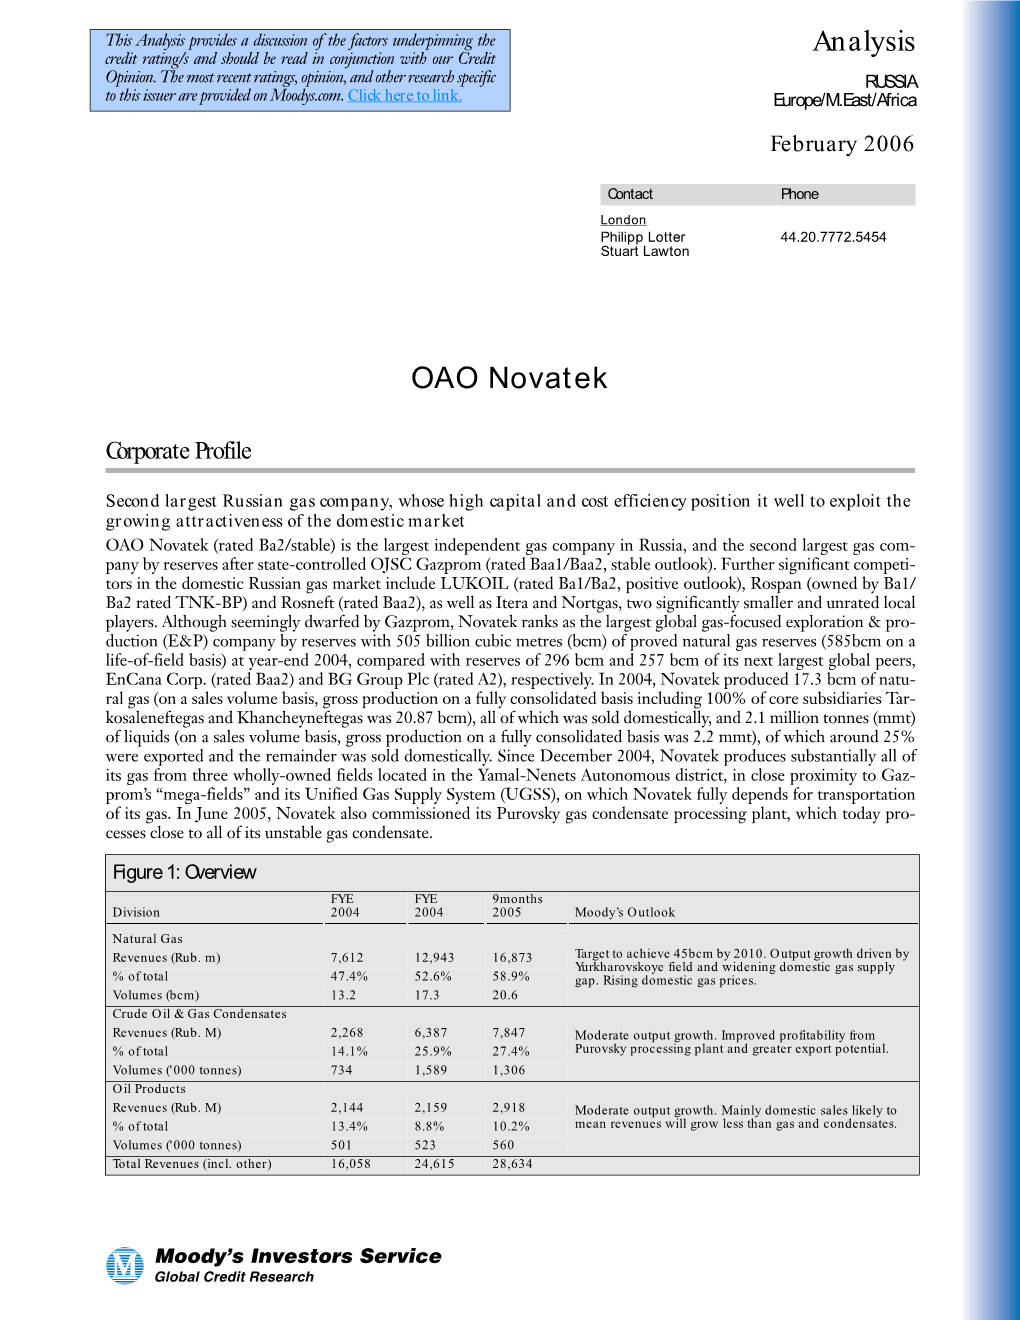 OAO NOVATEK: Corporate Profile